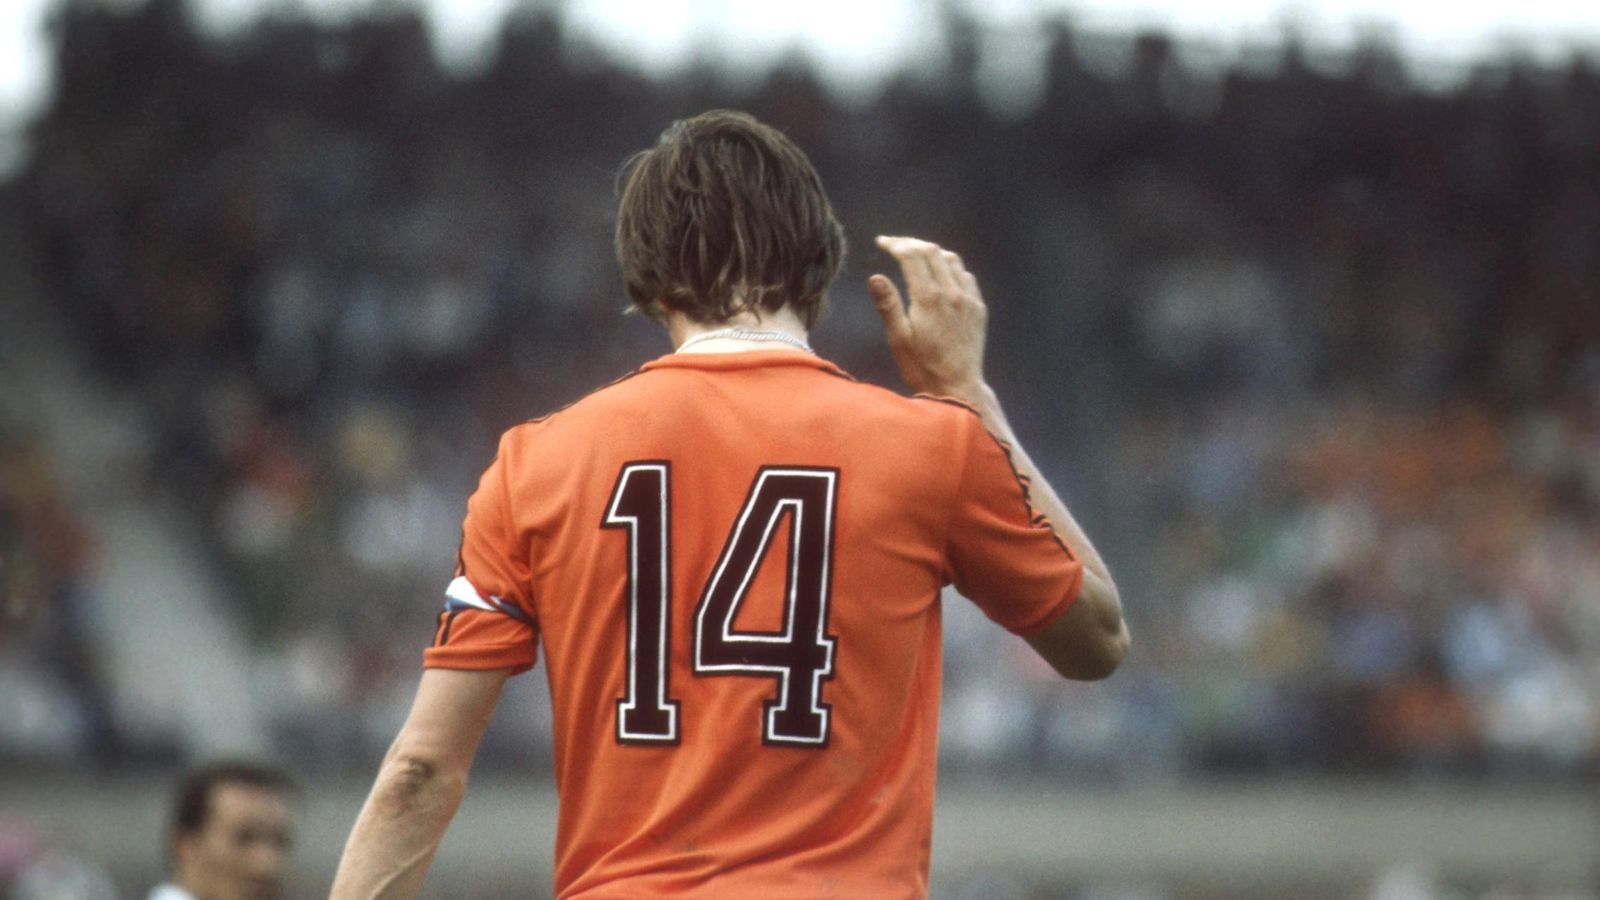 Foto: Johan Cruyff, en la imagen en un partido con la selección de Holanda, hizo suyo el número 14 (Cordon Press)